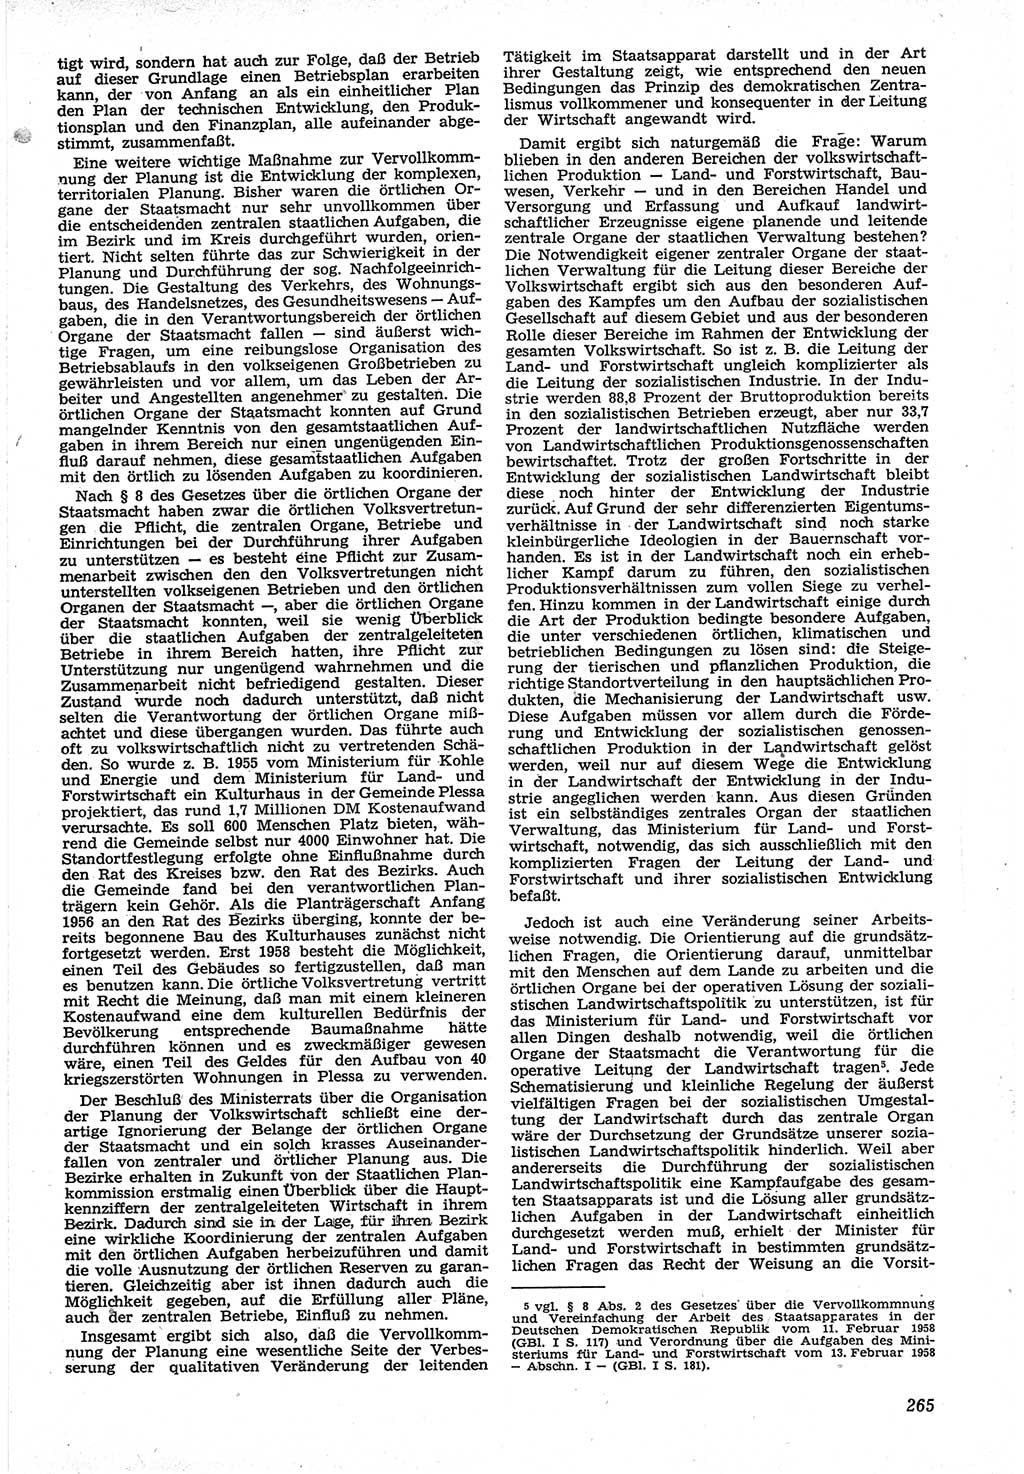 Neue Justiz (NJ), Zeitschrift für Recht und Rechtswissenschaft [Deutsche Demokratische Republik (DDR)], 12. Jahrgang 1958, Seite 265 (NJ DDR 1958, S. 265)